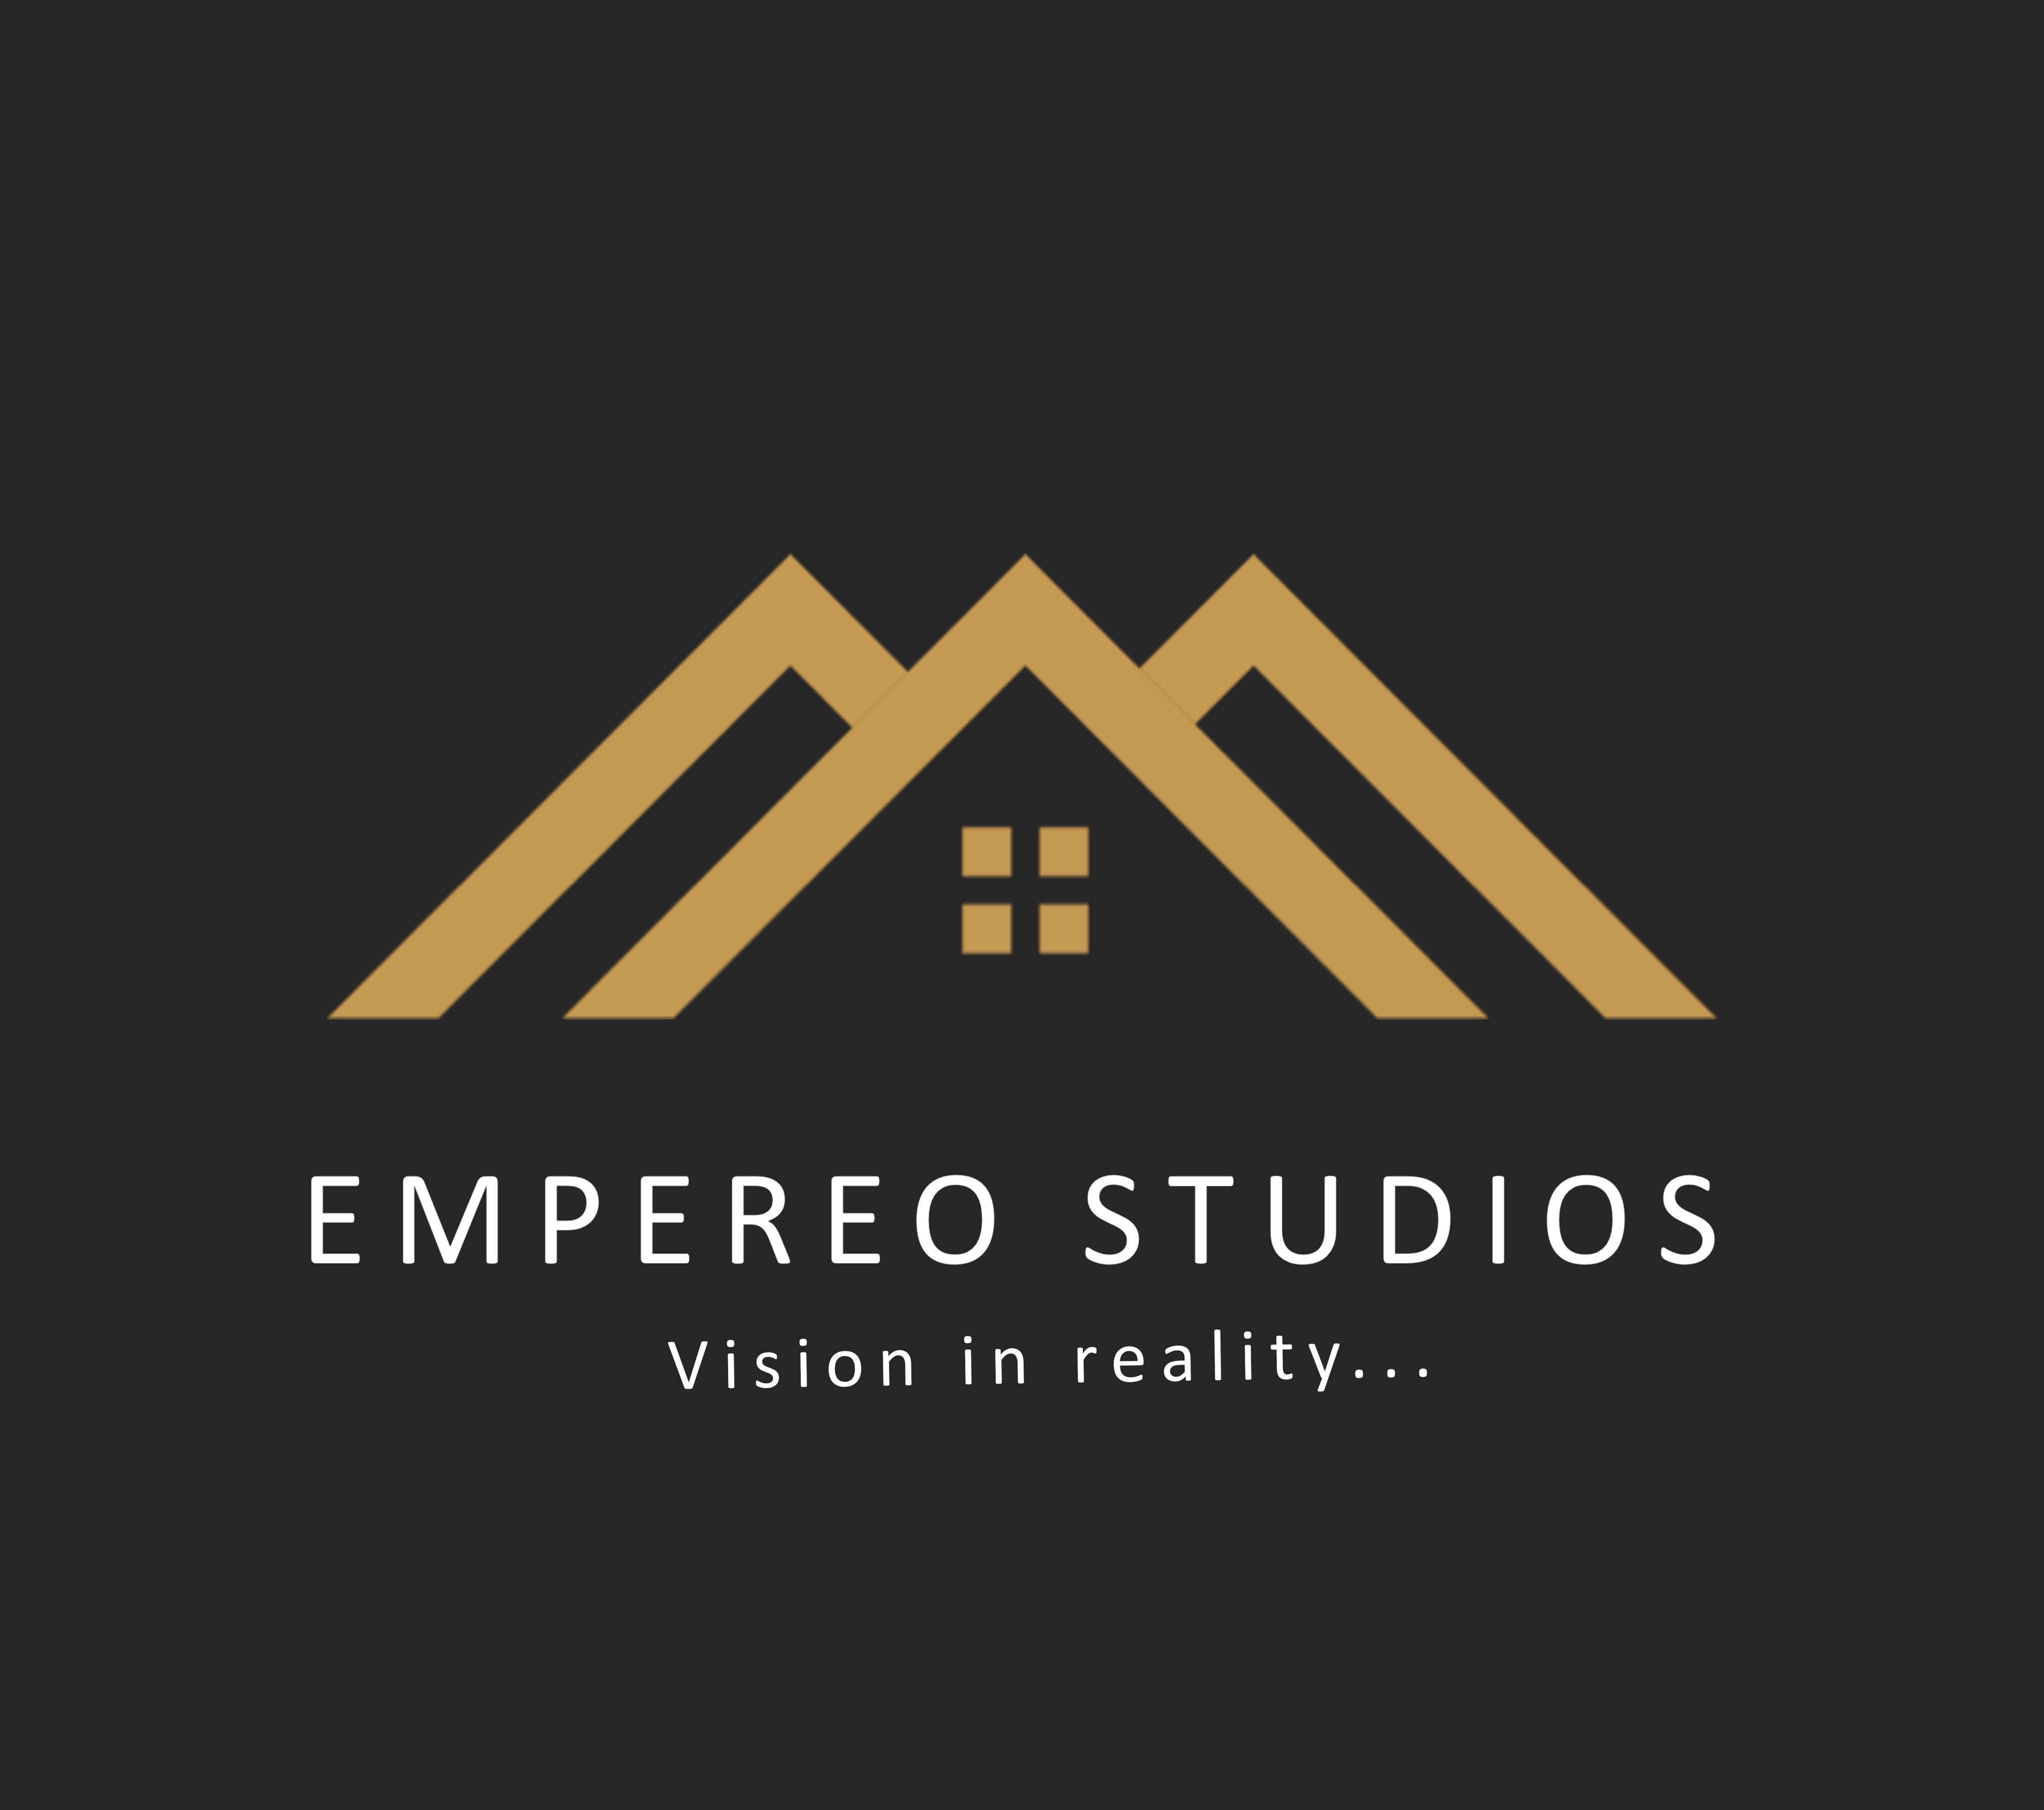 Empereo studios provider